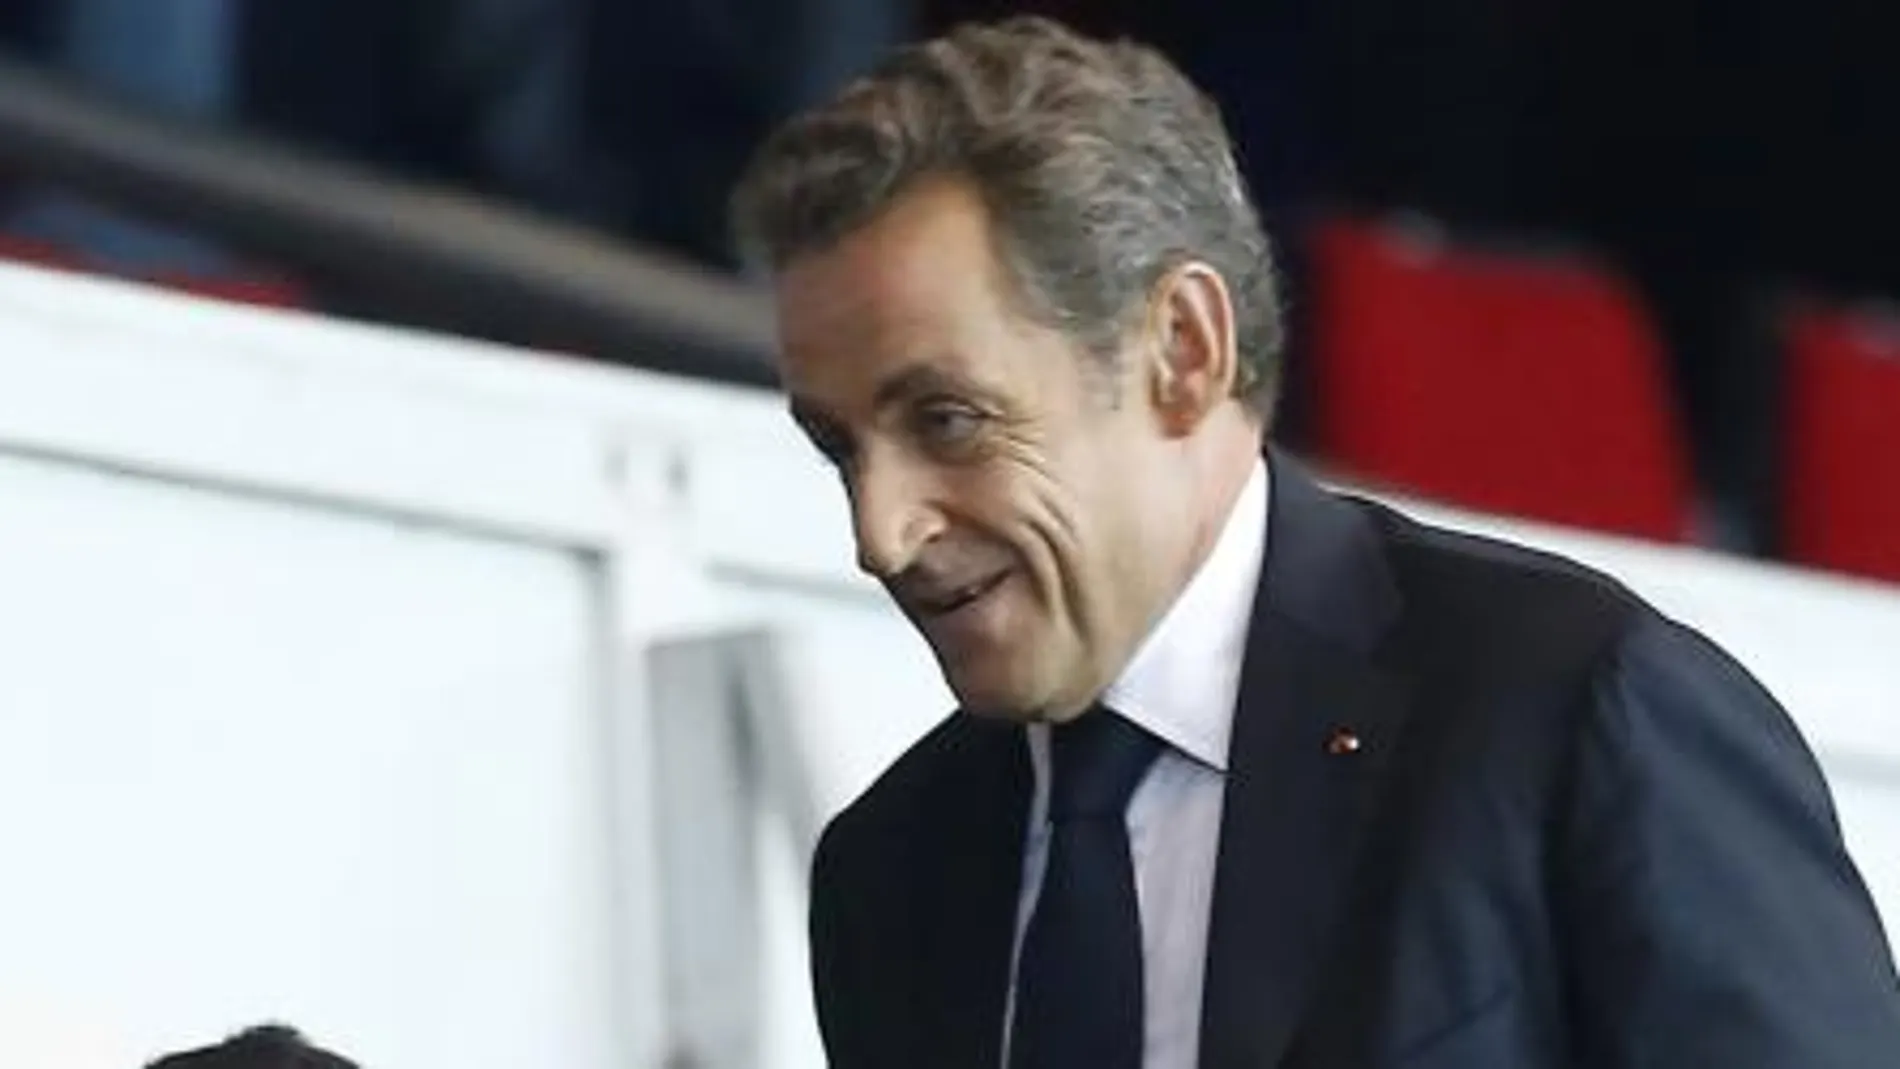 Nicolas Sarkozy el pasado finde semana durante el partido del Paris Saint Germain's y el Olympique